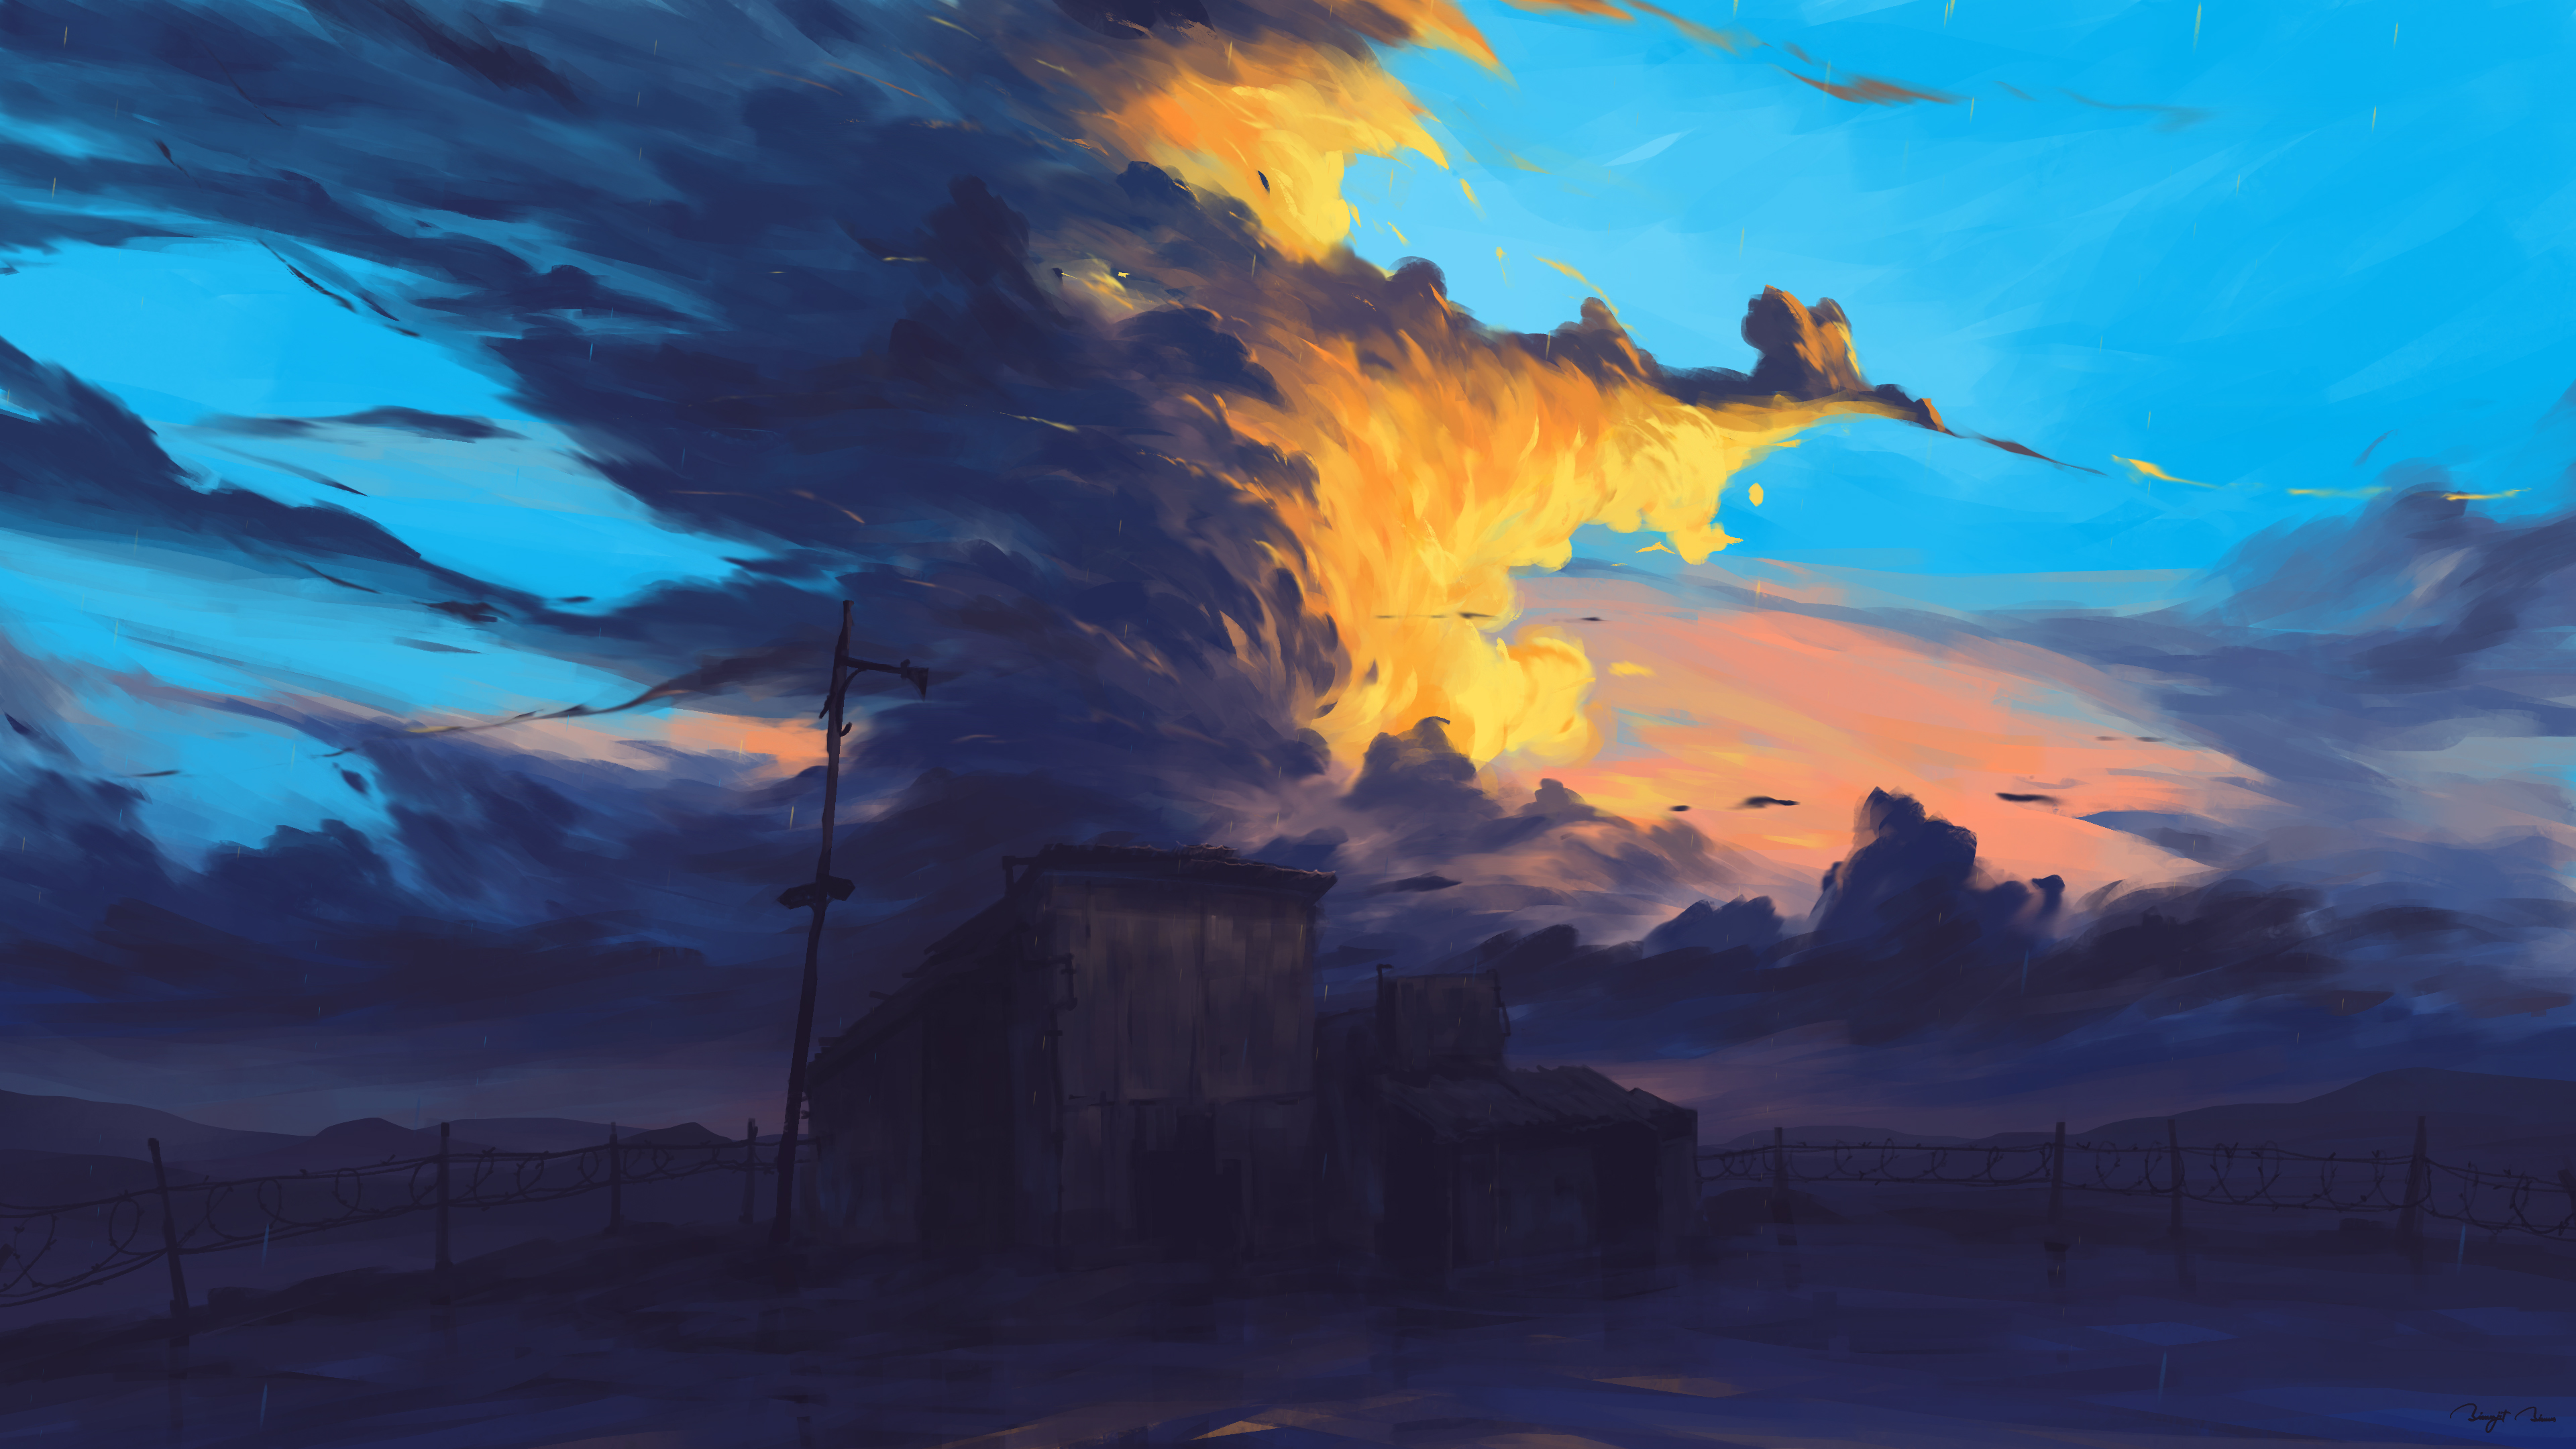 BisBiswas Digital Art Artwork Illustration Landscape Nature Clouds House Abandoned Sunset Sunlight 4 3840x2160